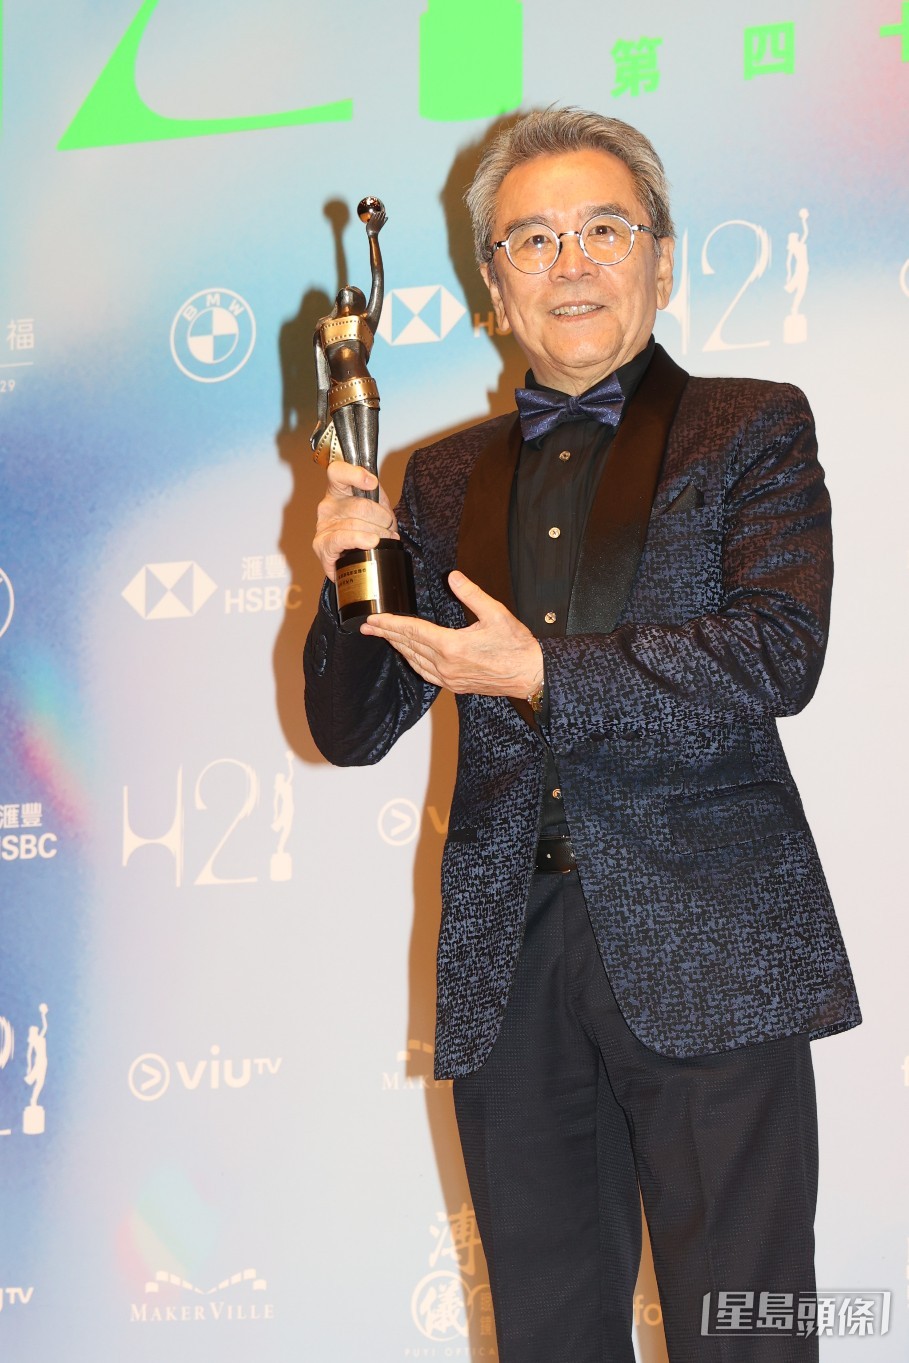 姜大卫事前没想过自己得奖，也很喜欢其他演员，希望黄梓乐、吴慷仁、谢君豪得奖。